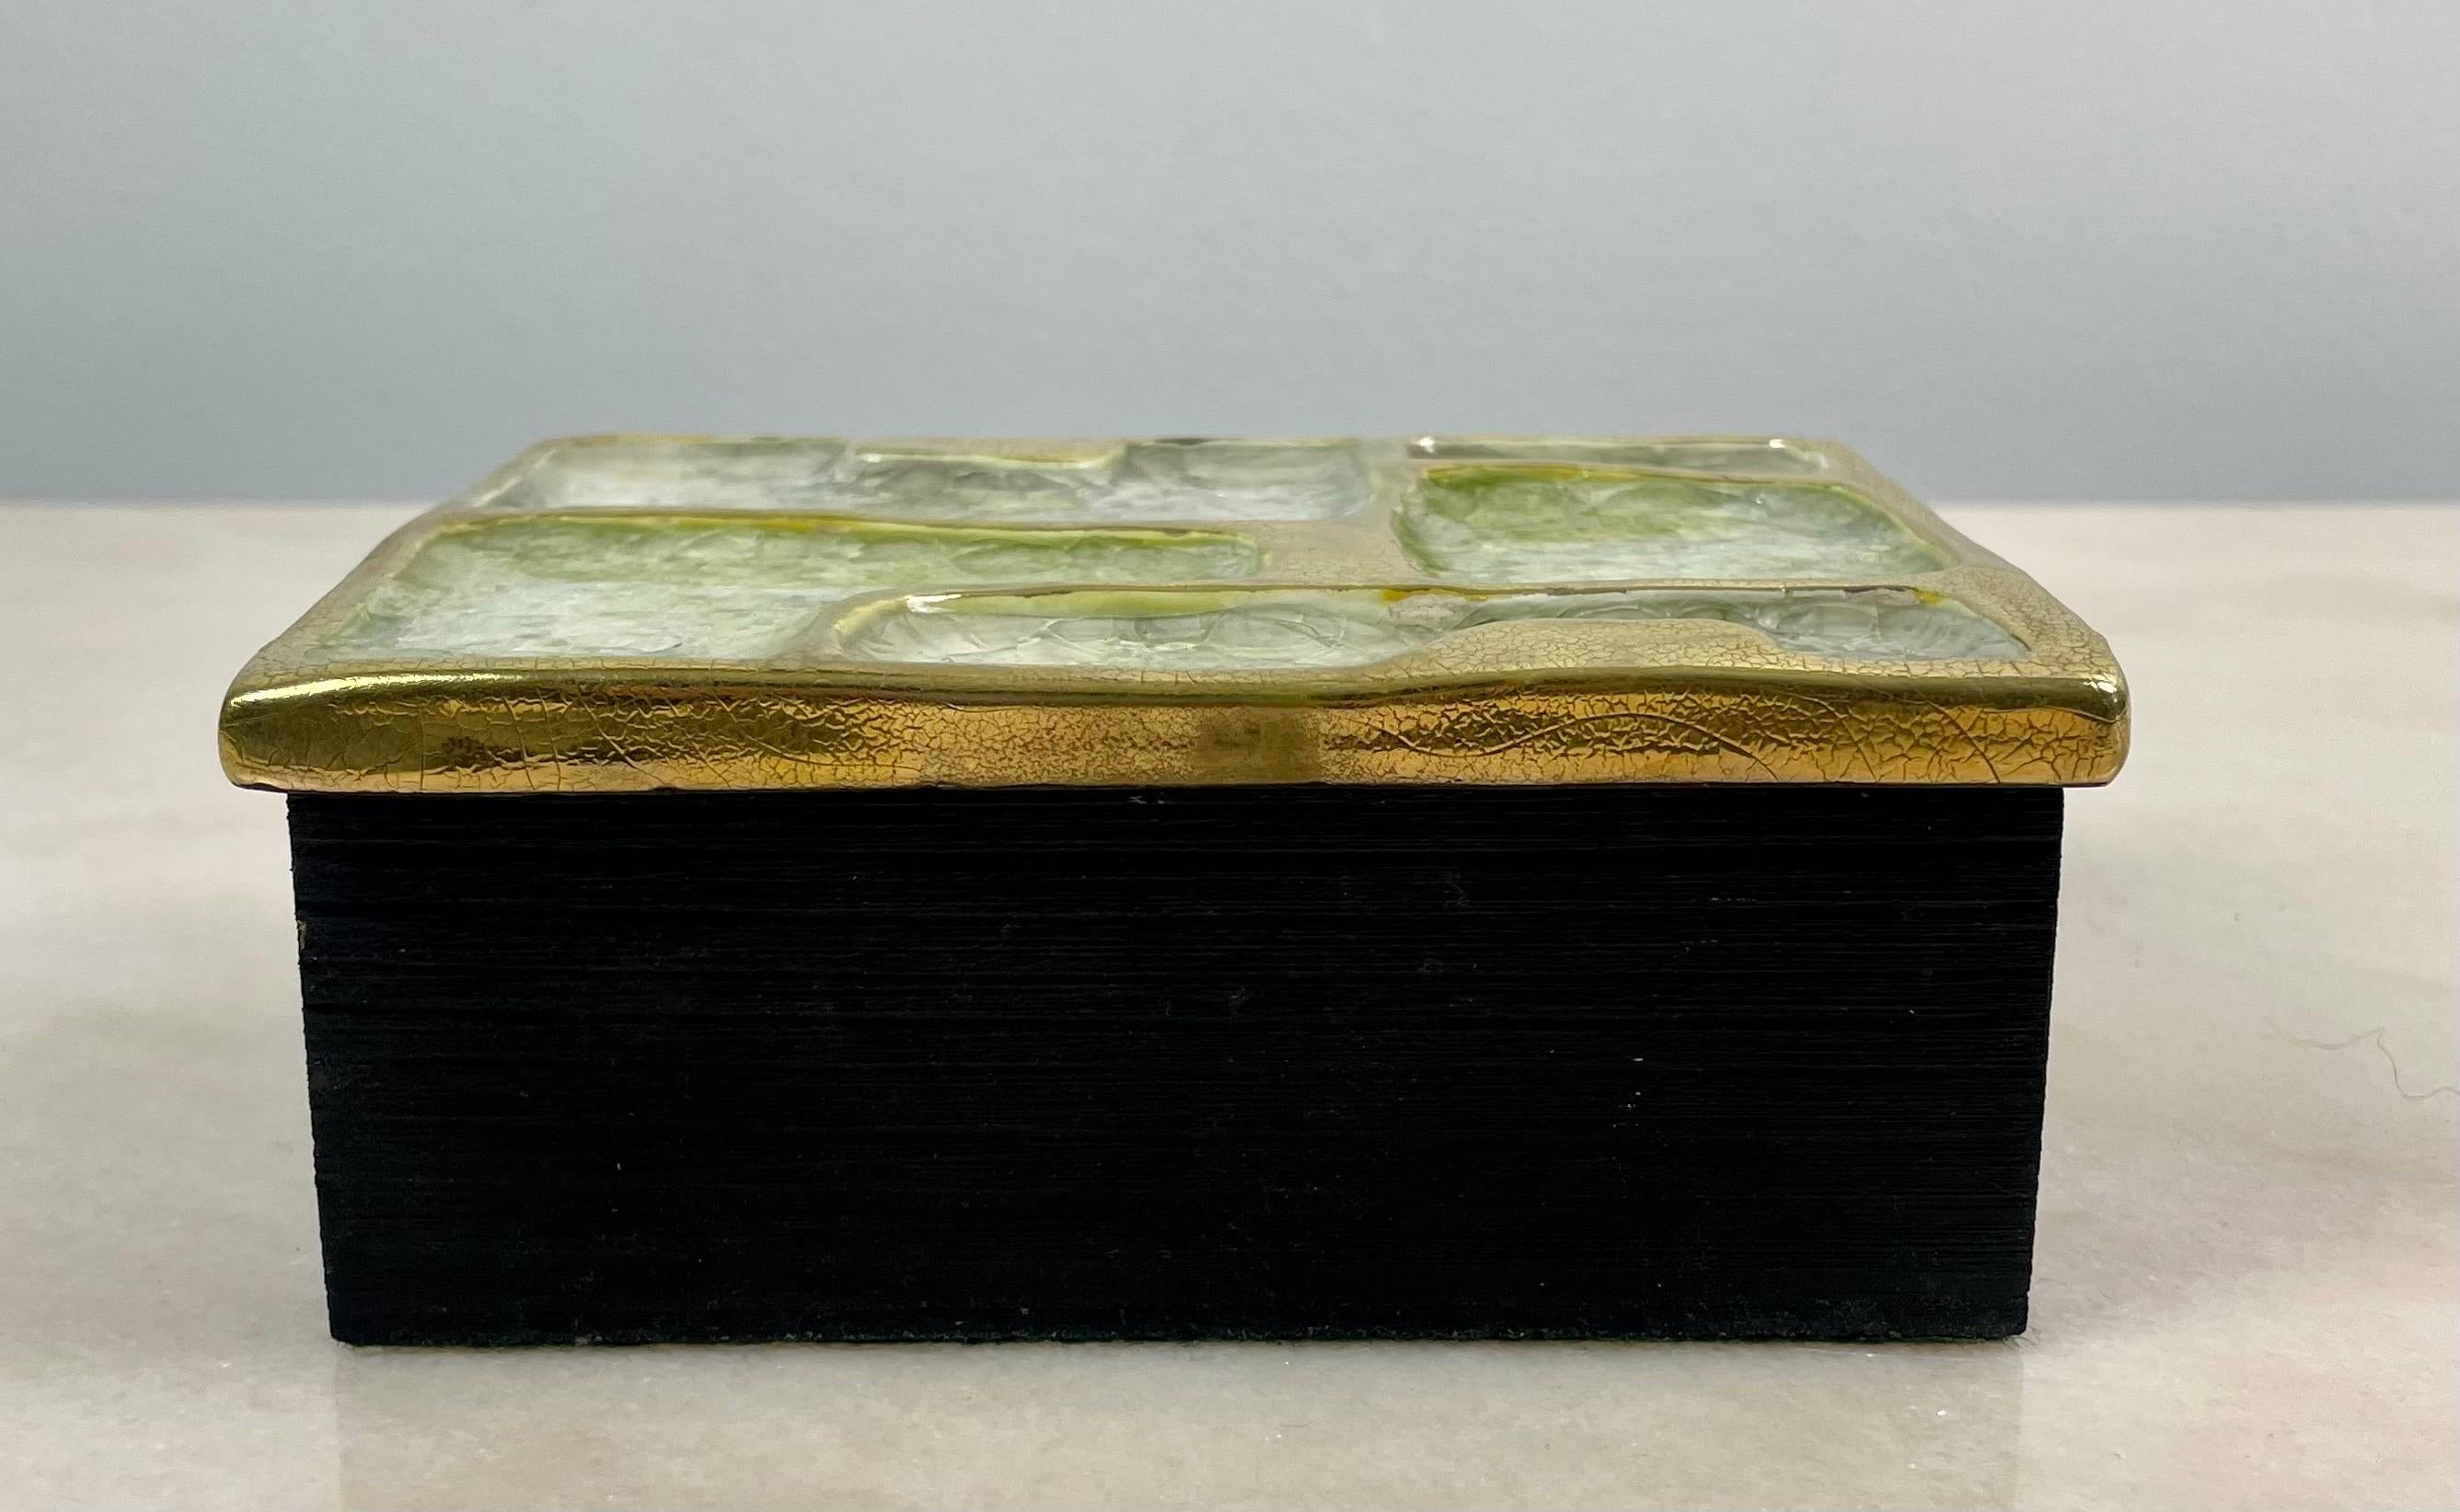 Glazed French Ceramic Secret box or jewelry box or tidy  - Mithé Espelt 60's Fance 